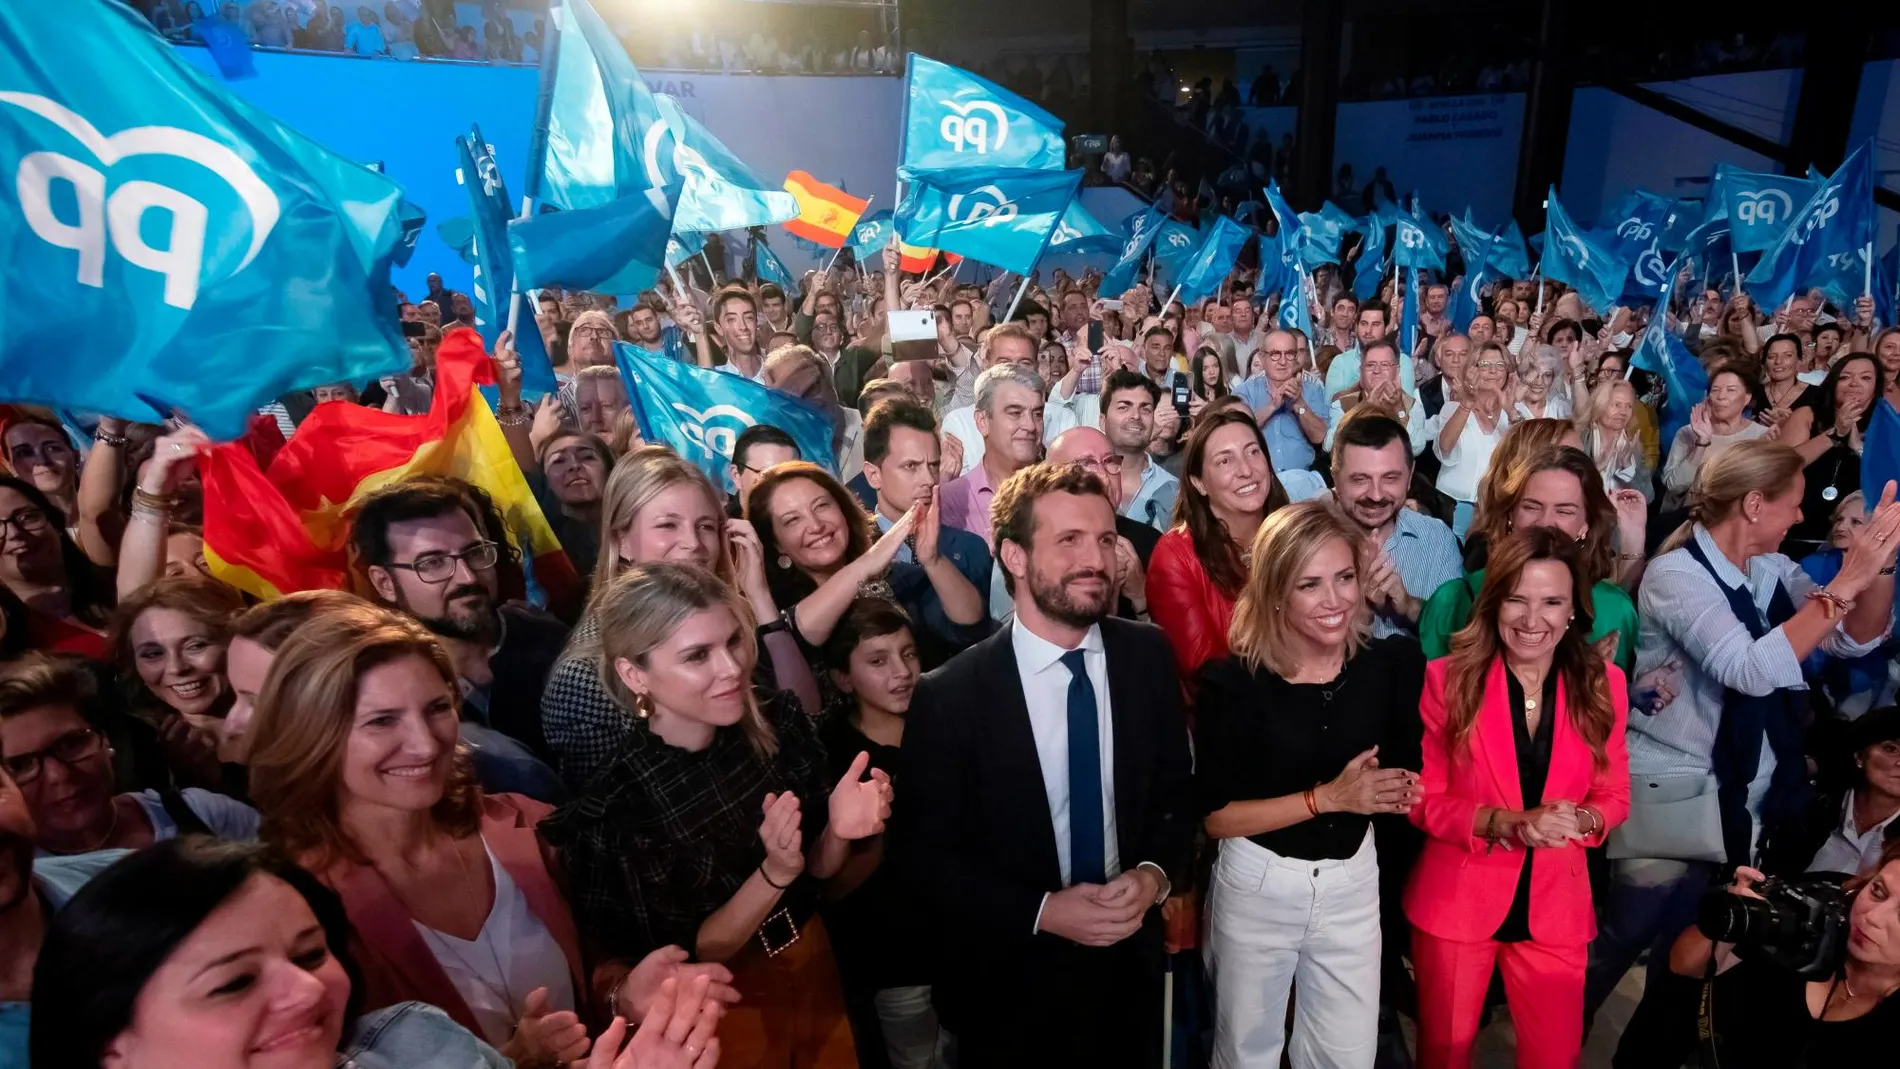 Casado llamó de nuevo a aunar el voto en torno al PP, la unión que no lograron con su propuesta de “España Suma” pide que sea el elector quien la haga en las urnas